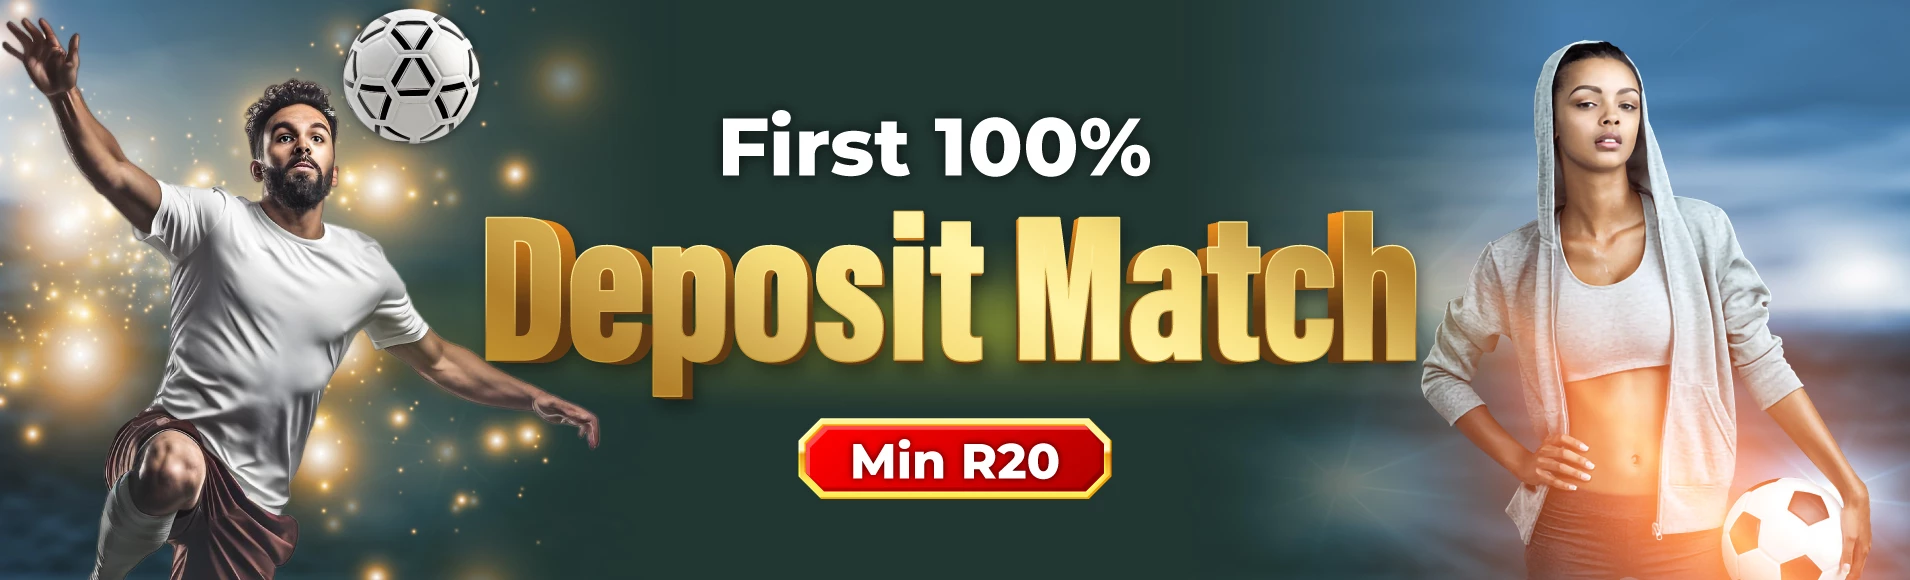 2177-first-100-deposit-match-web-17180255306555.jpg